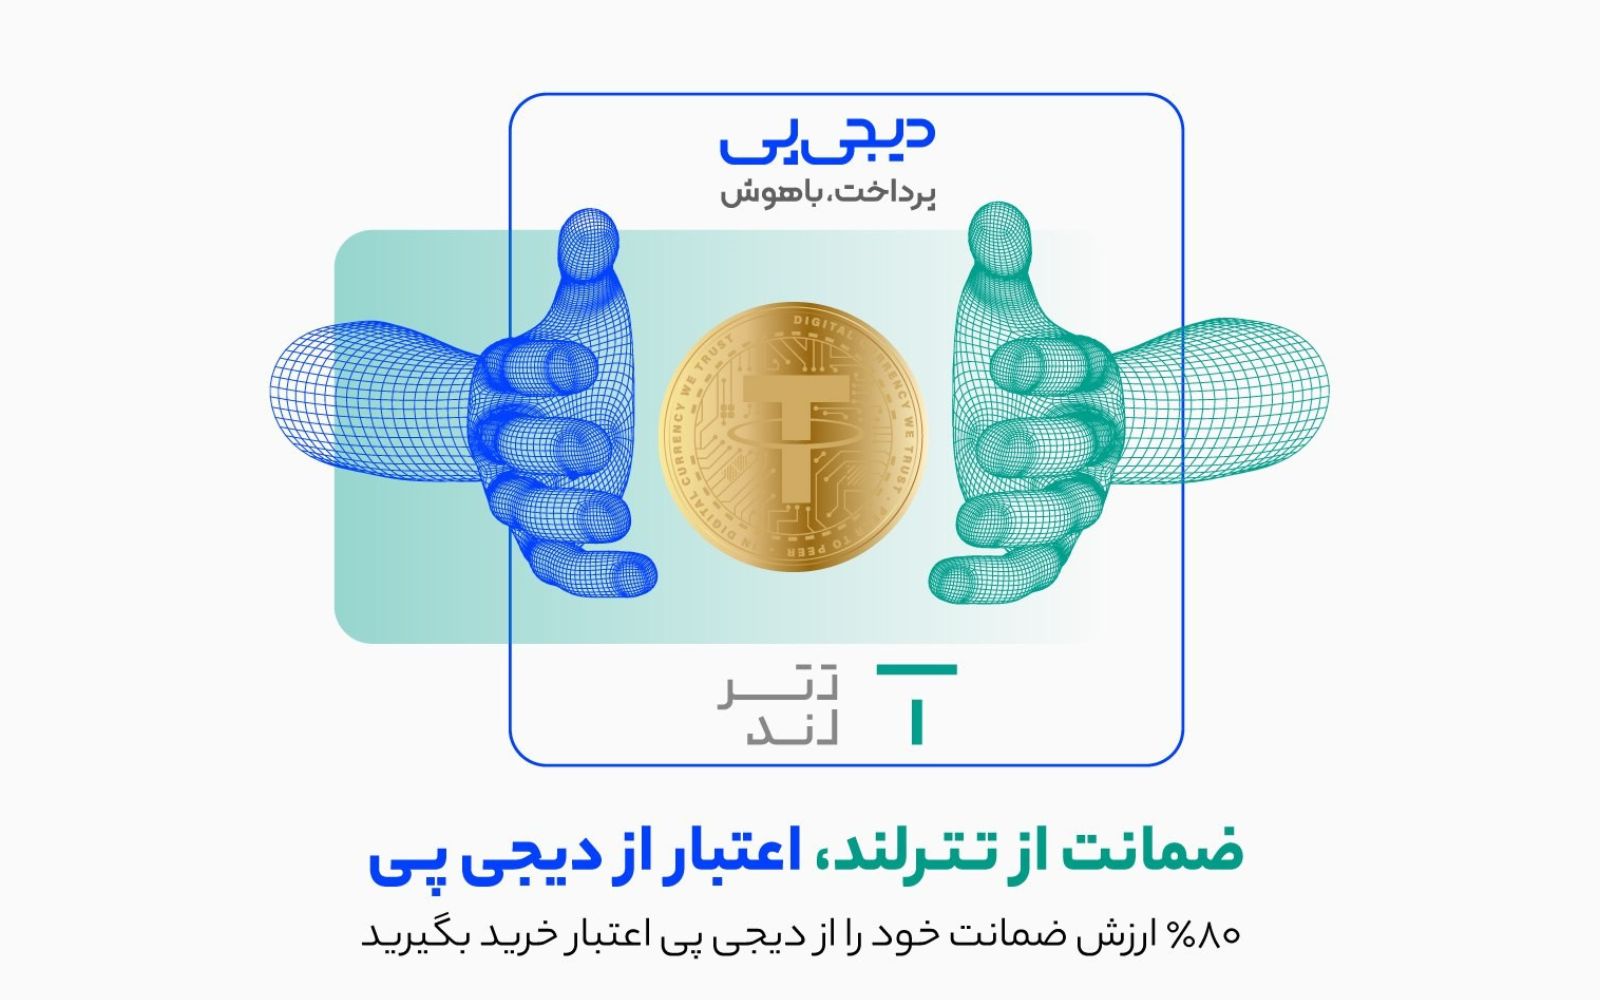 رونمایی از همکاری کسب‌وکار لندتکی و رمزارزی ایرانی / دیجی‌پی و تترلند امکان خرید اعتباری با ضمانت رمزارزی را فراهم می‌کنند